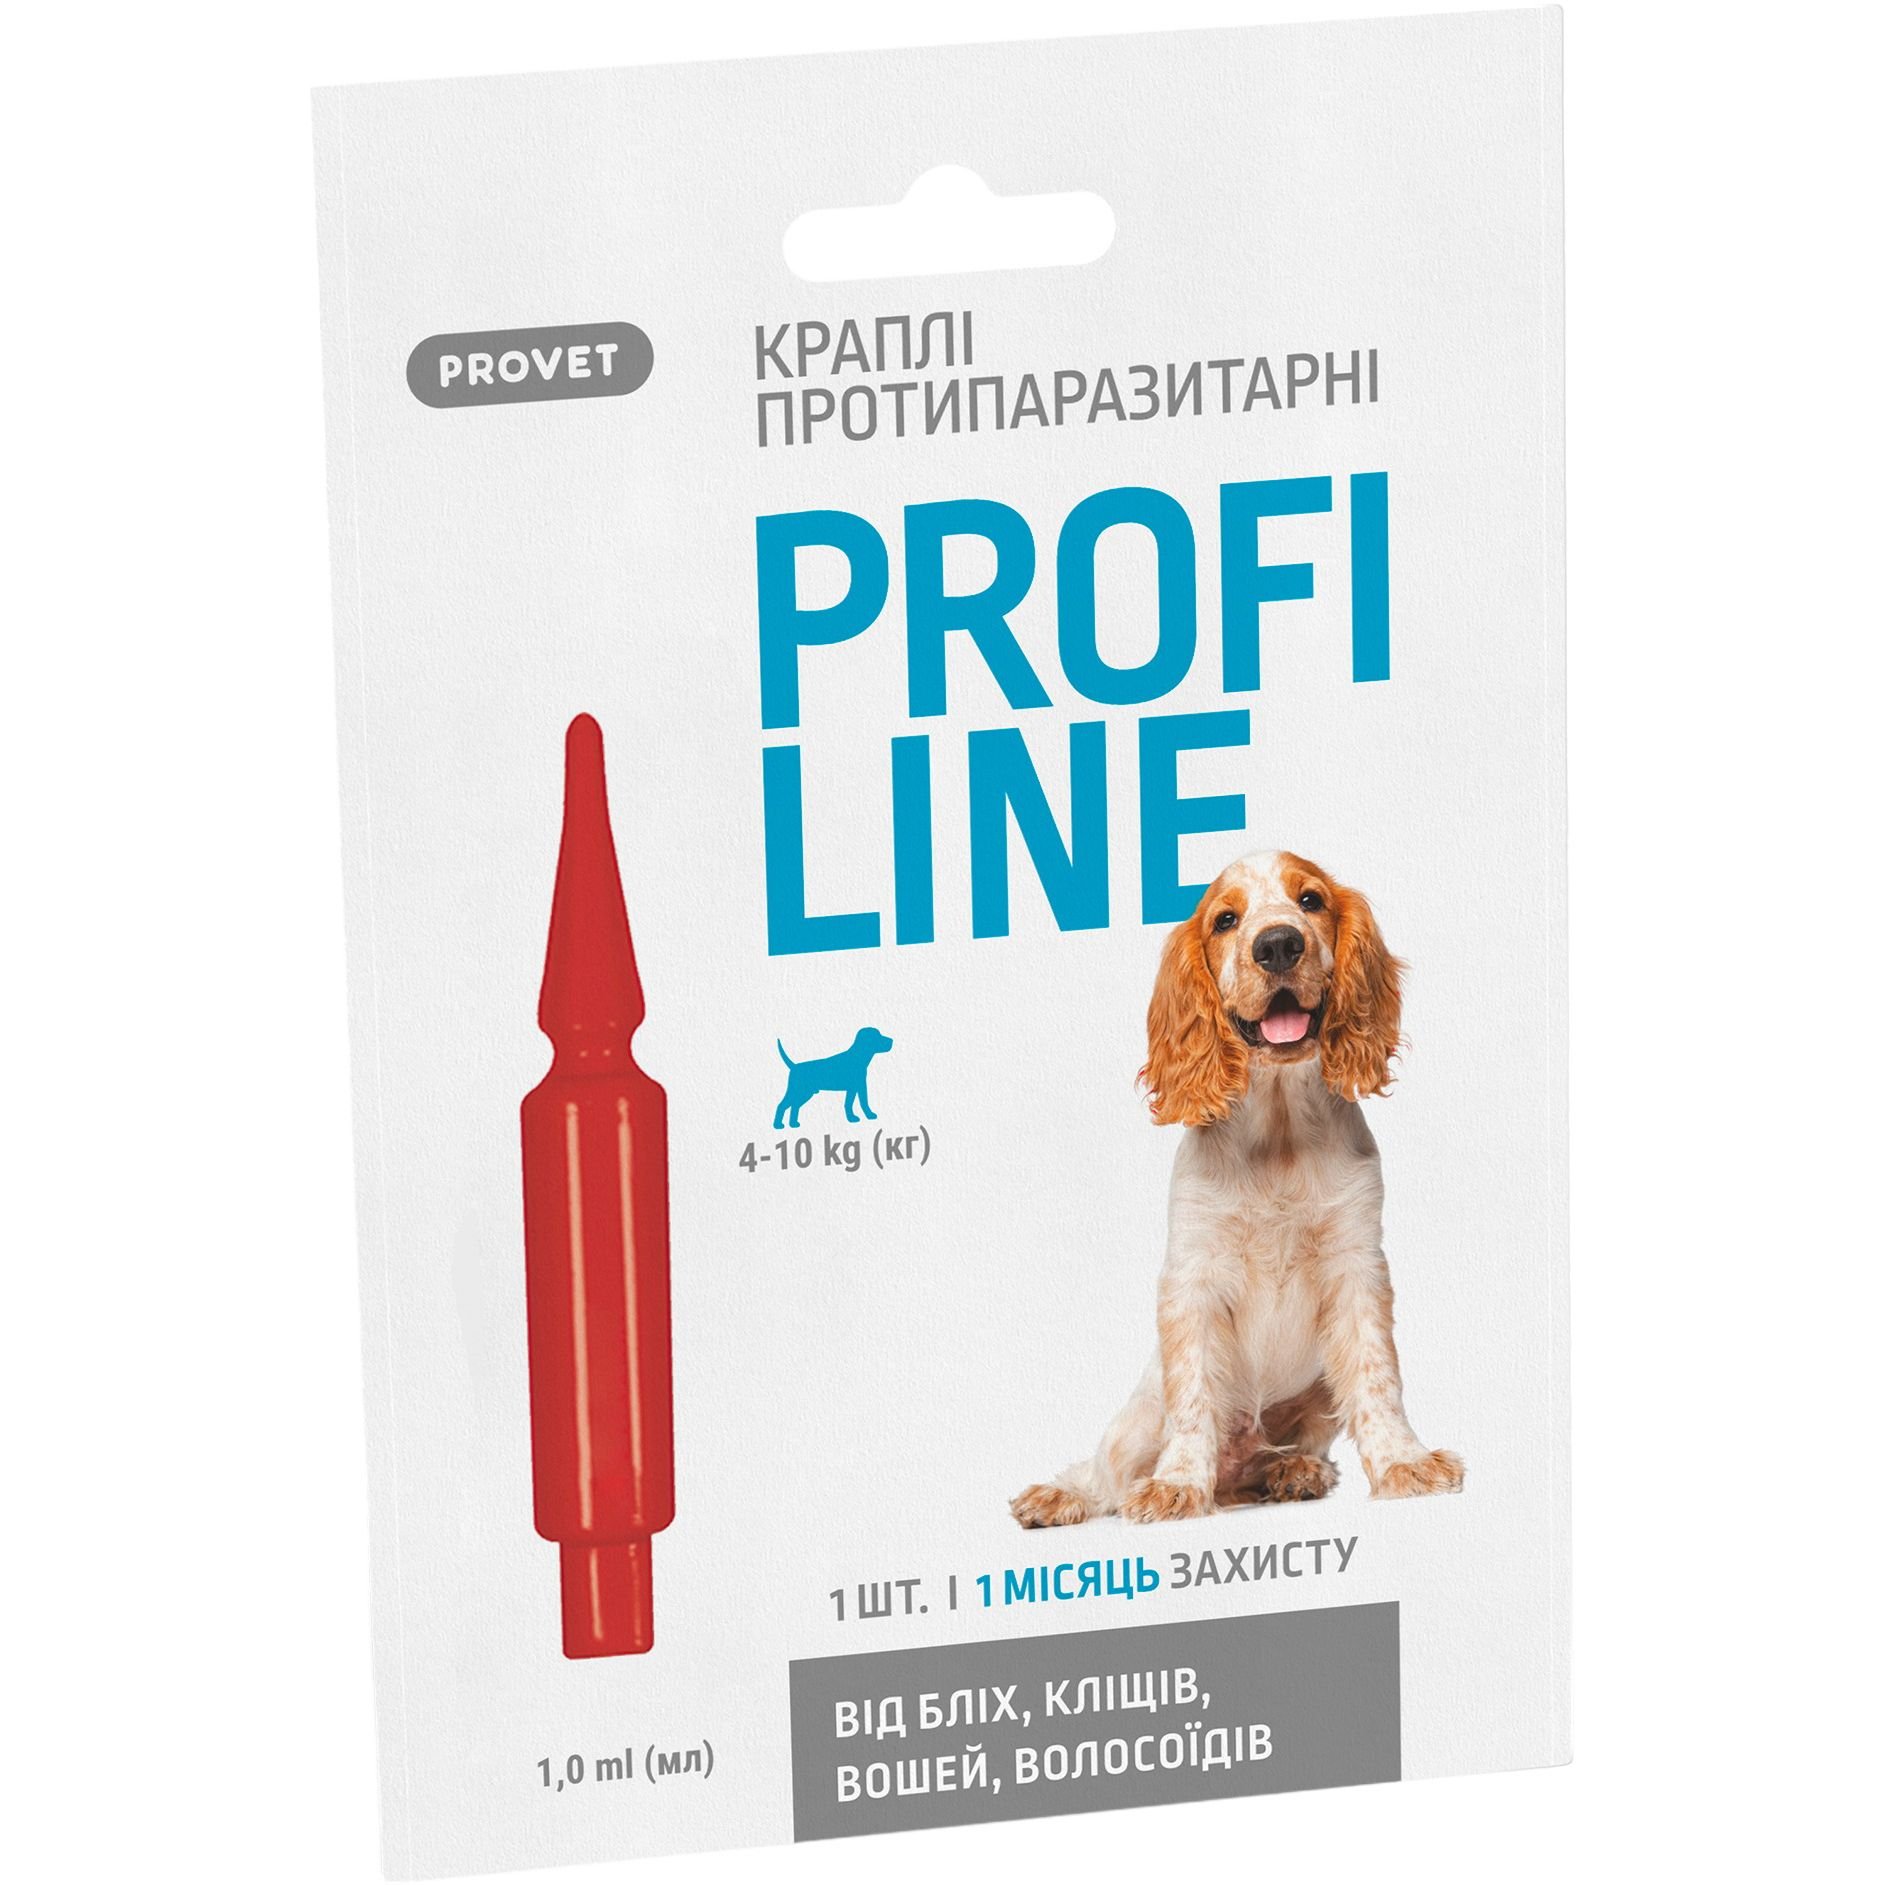 Капли на холку для собак ProVET Profiline от внешних паразитов, от 4 до 10 кг, 1 пипетка 1 мл - фото 1